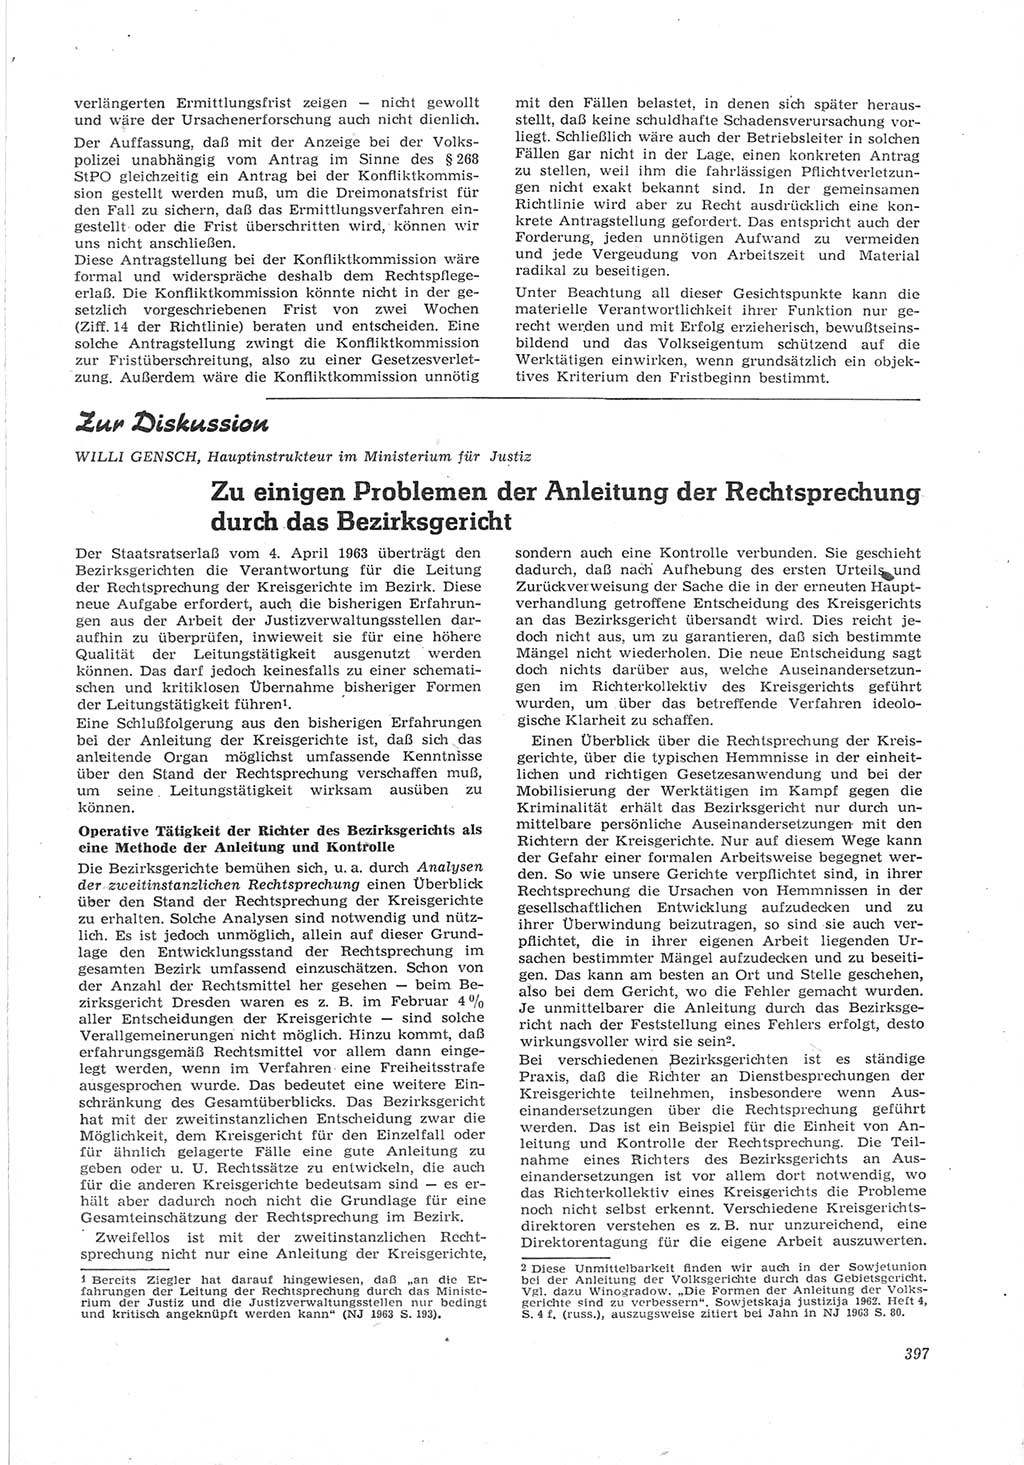 Neue Justiz (NJ), Zeitschrift für Recht und Rechtswissenschaft [Deutsche Demokratische Republik (DDR)], 17. Jahrgang 1963, Seite 397 (NJ DDR 1963, S. 397)